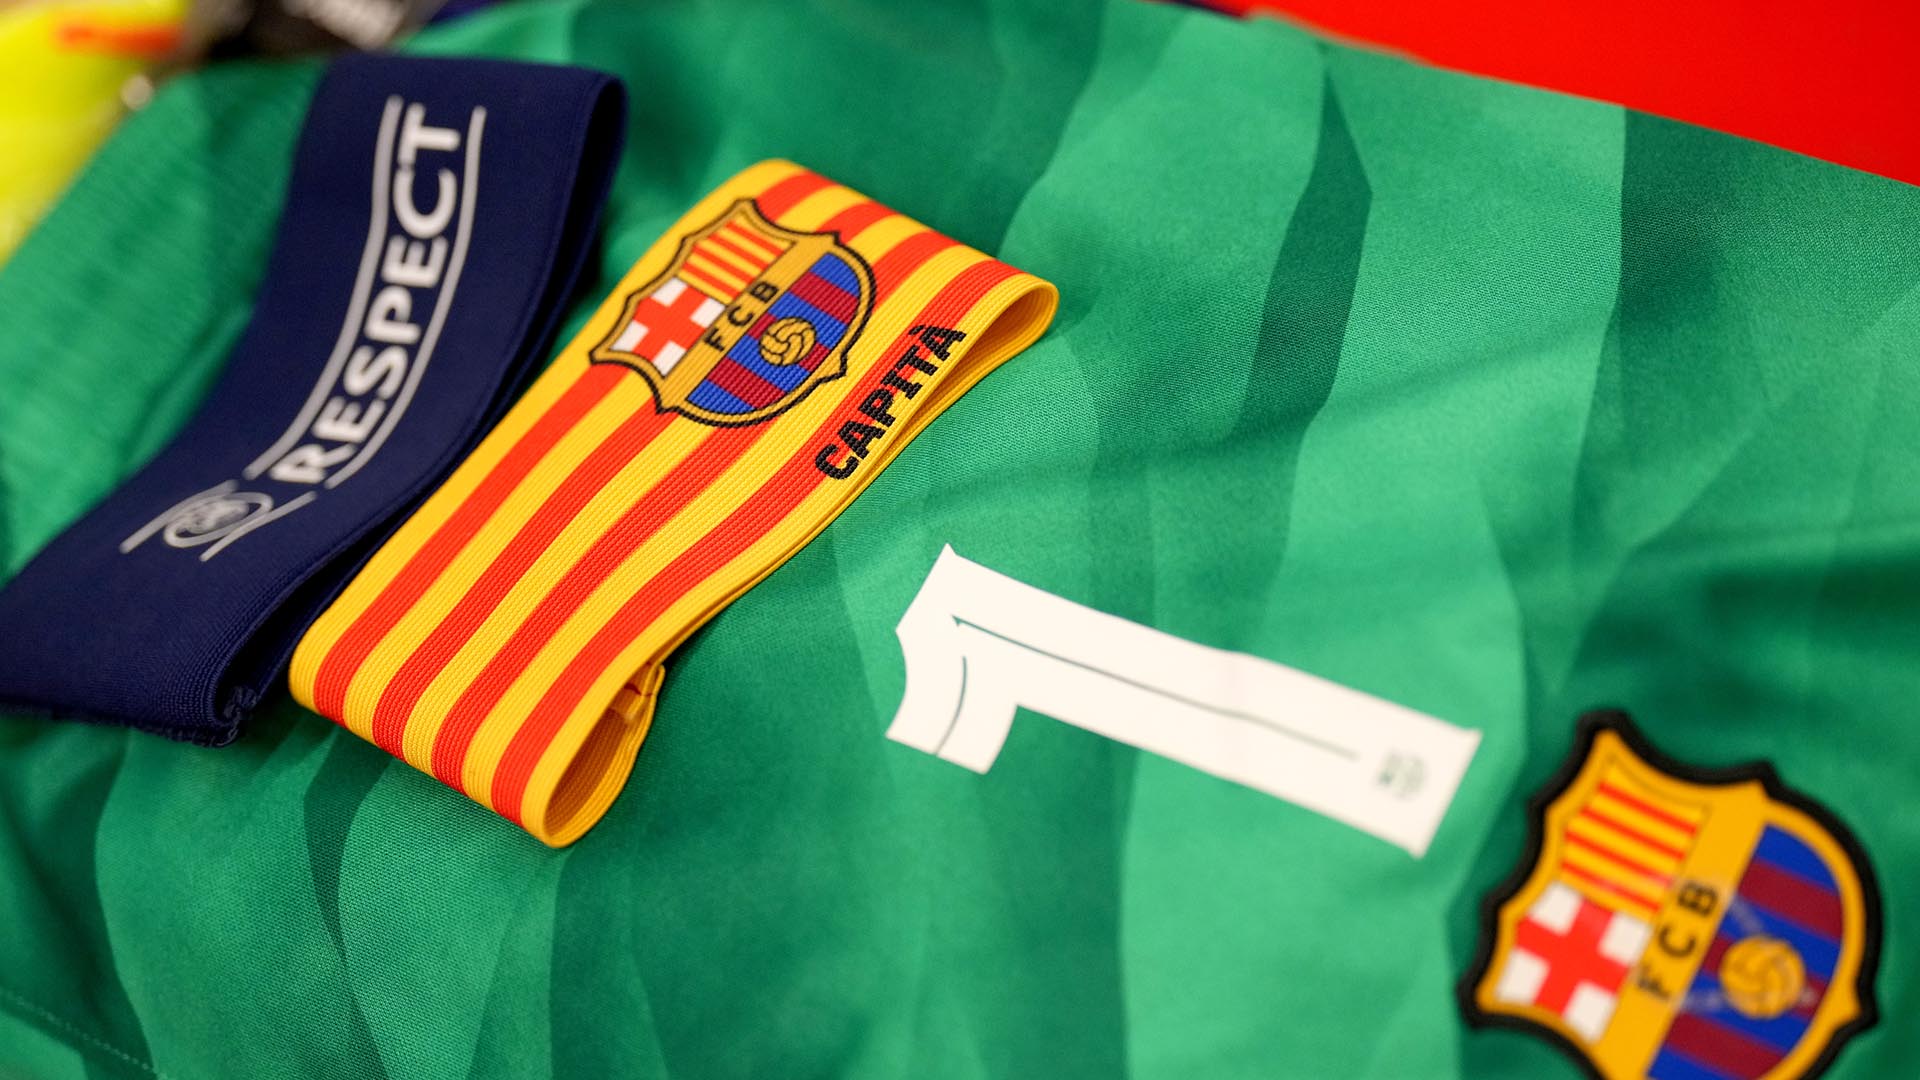 El 17 de abril de 2018 se puso por primera vez el brazalete de capitán del Barça, pero no formó parte de los cuatro capitanes titulares hasta junio de 2022. Si Sergi Roberto se marcha este verano, llevará el brazalete por derecho.